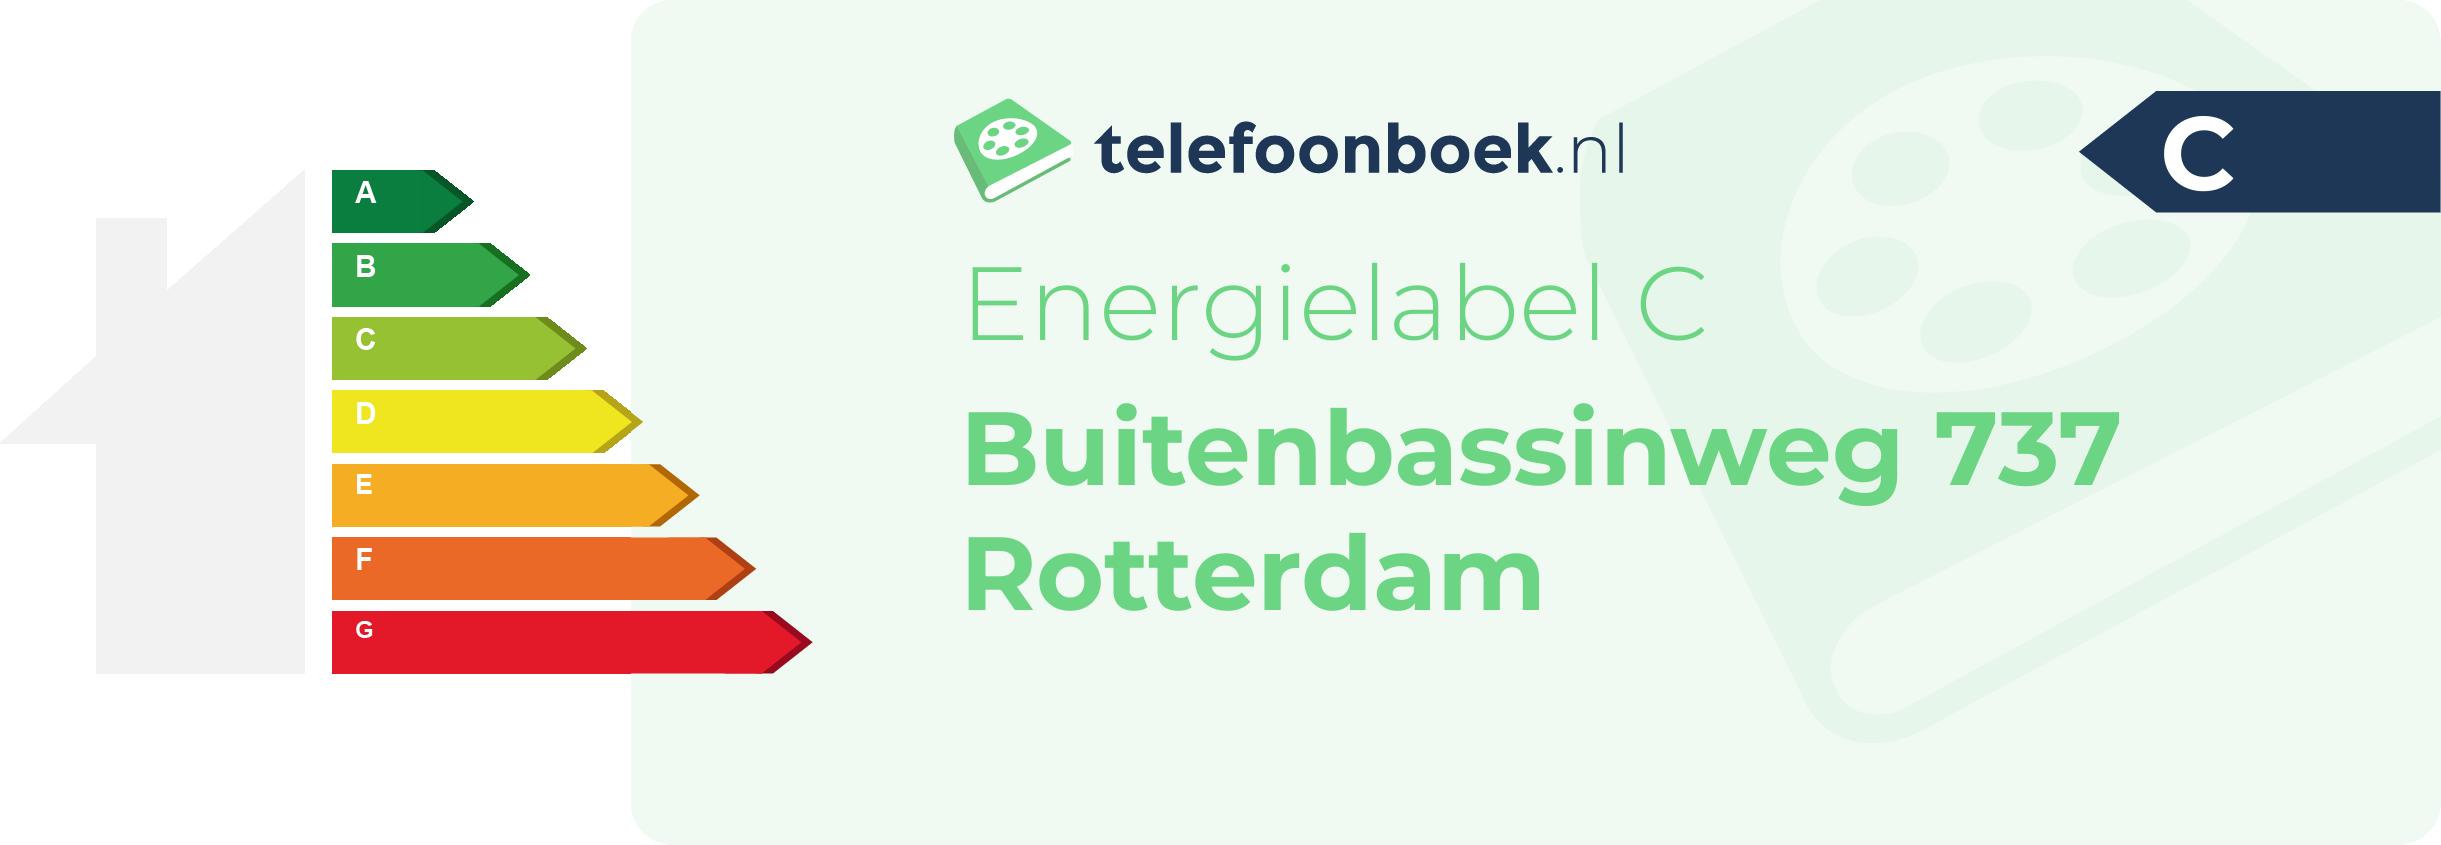 Energielabel Buitenbassinweg 737 Rotterdam